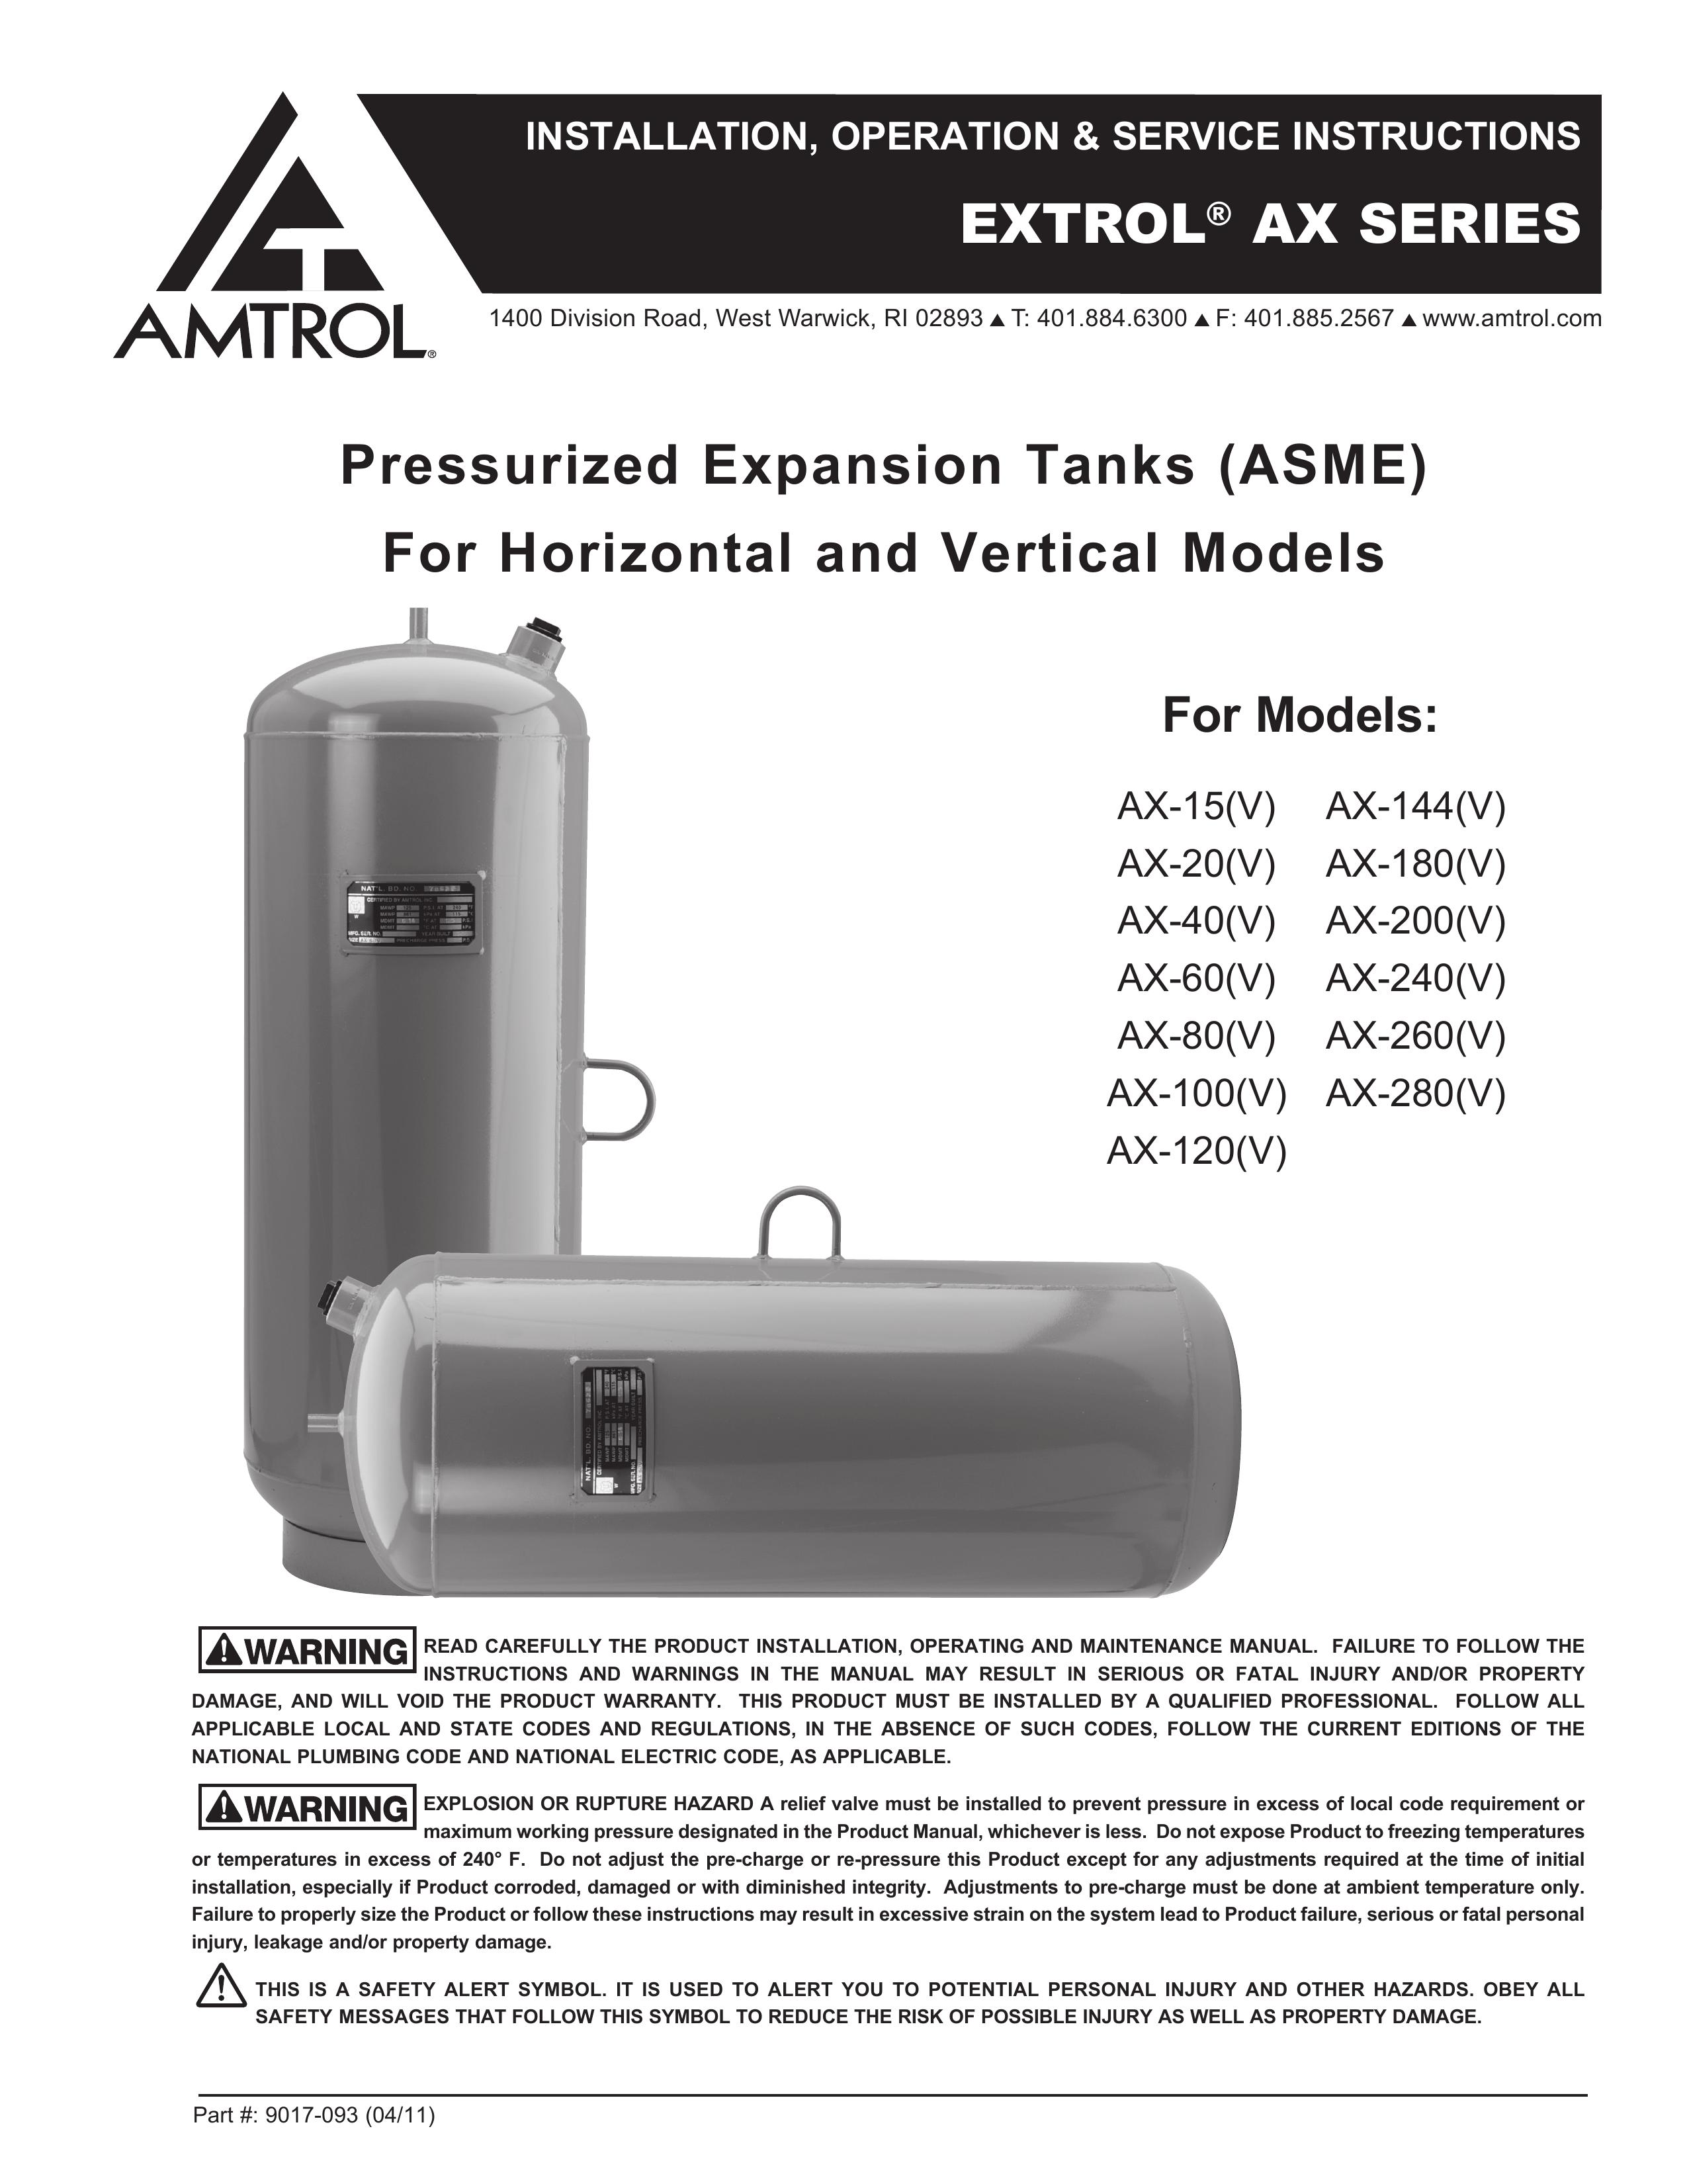 Amtrol AX-280(V) Oxygen Equipment User Manual